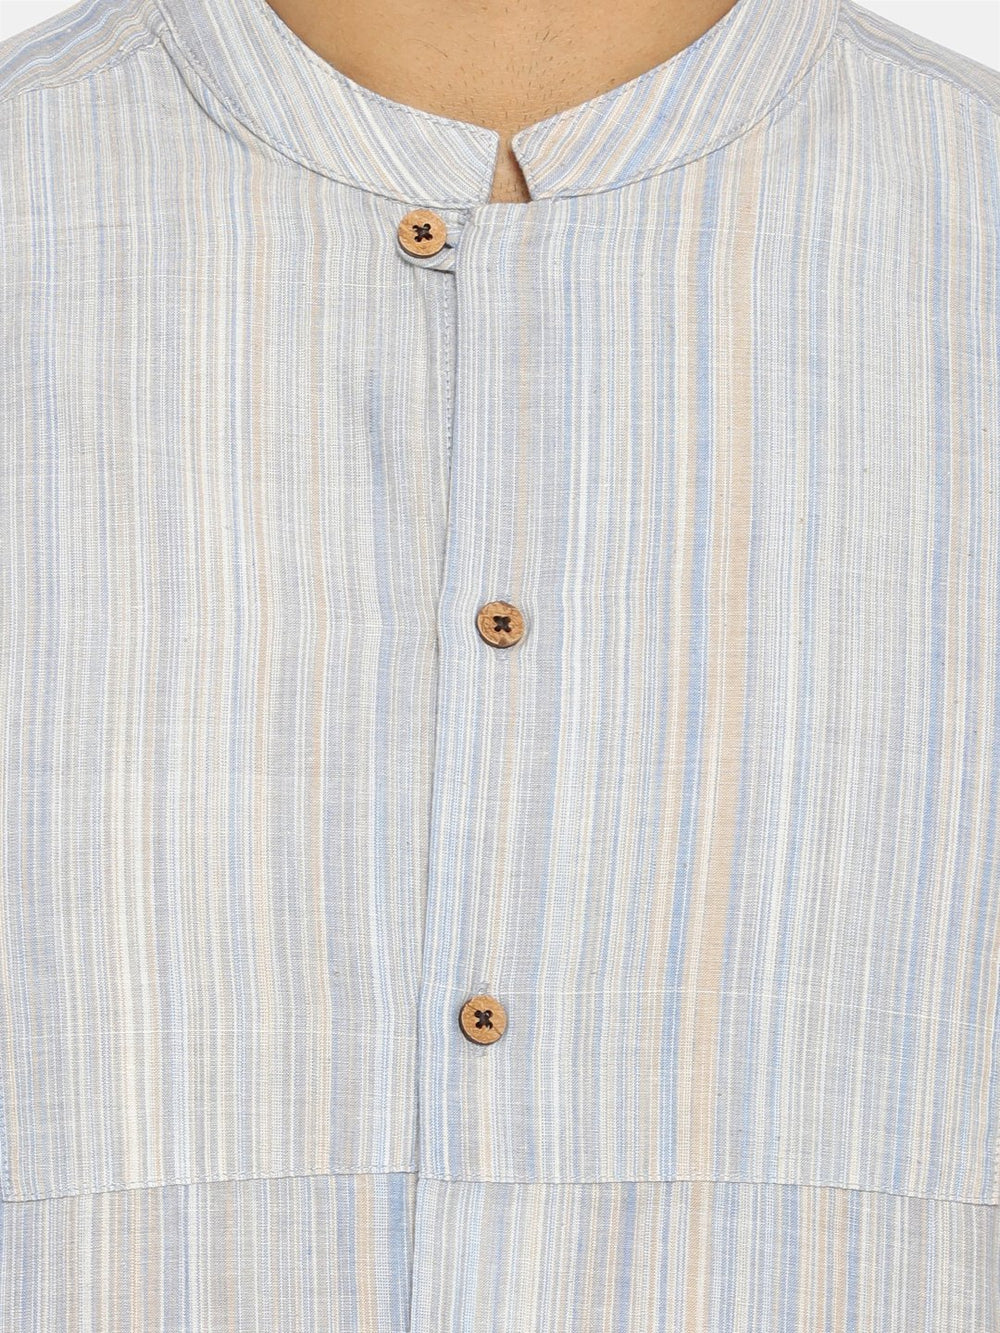 Light blue striped mandarin collar shirt